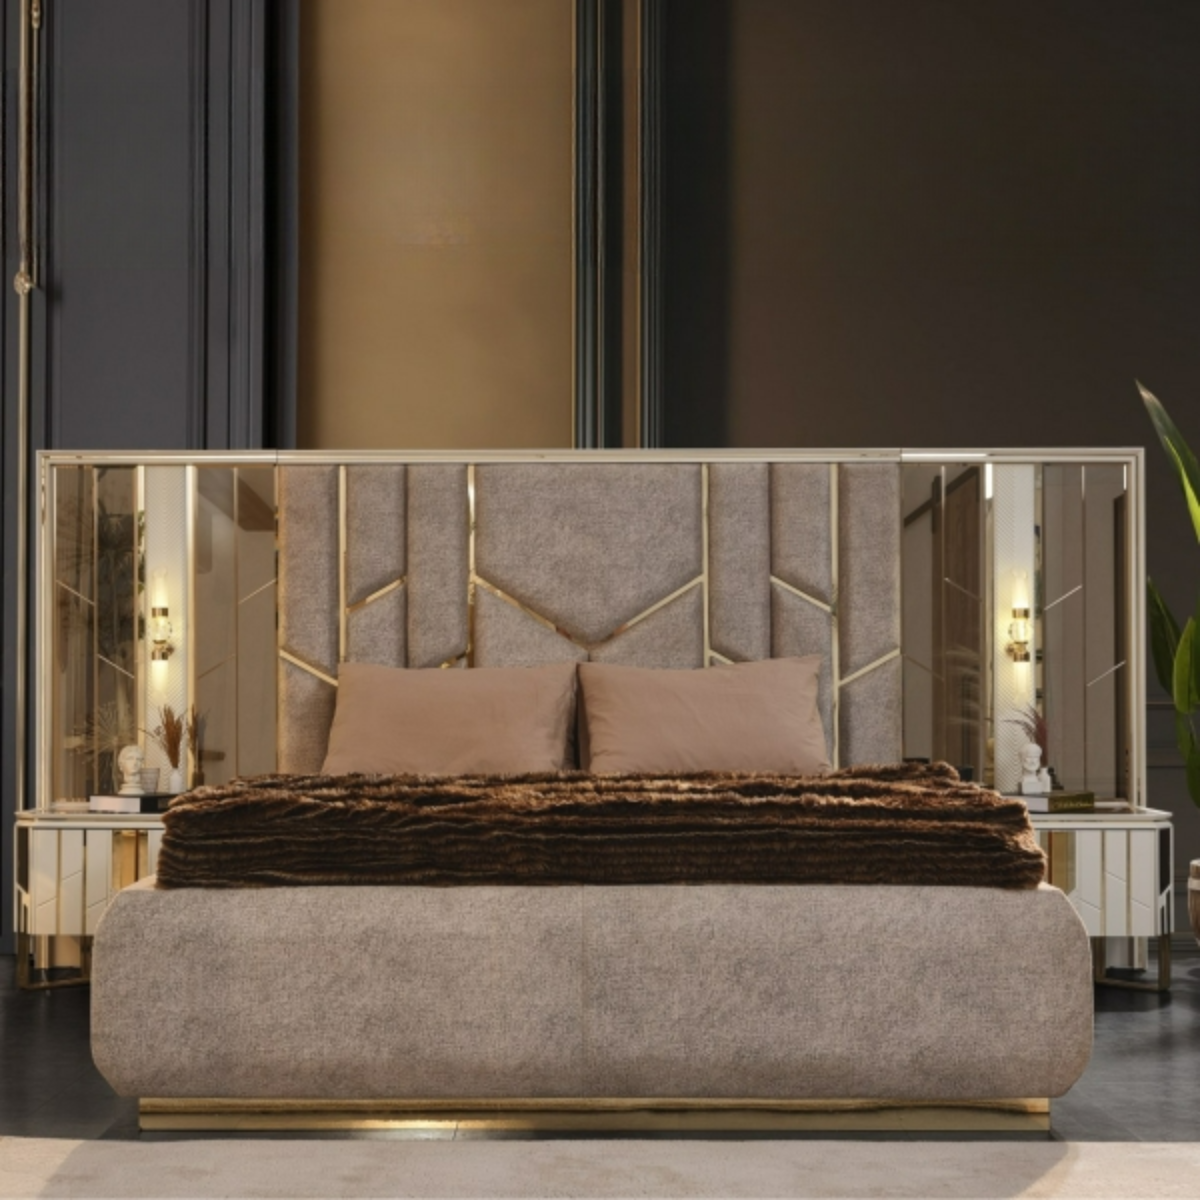 Set Dormitor modern cu detalii aurii, Nill